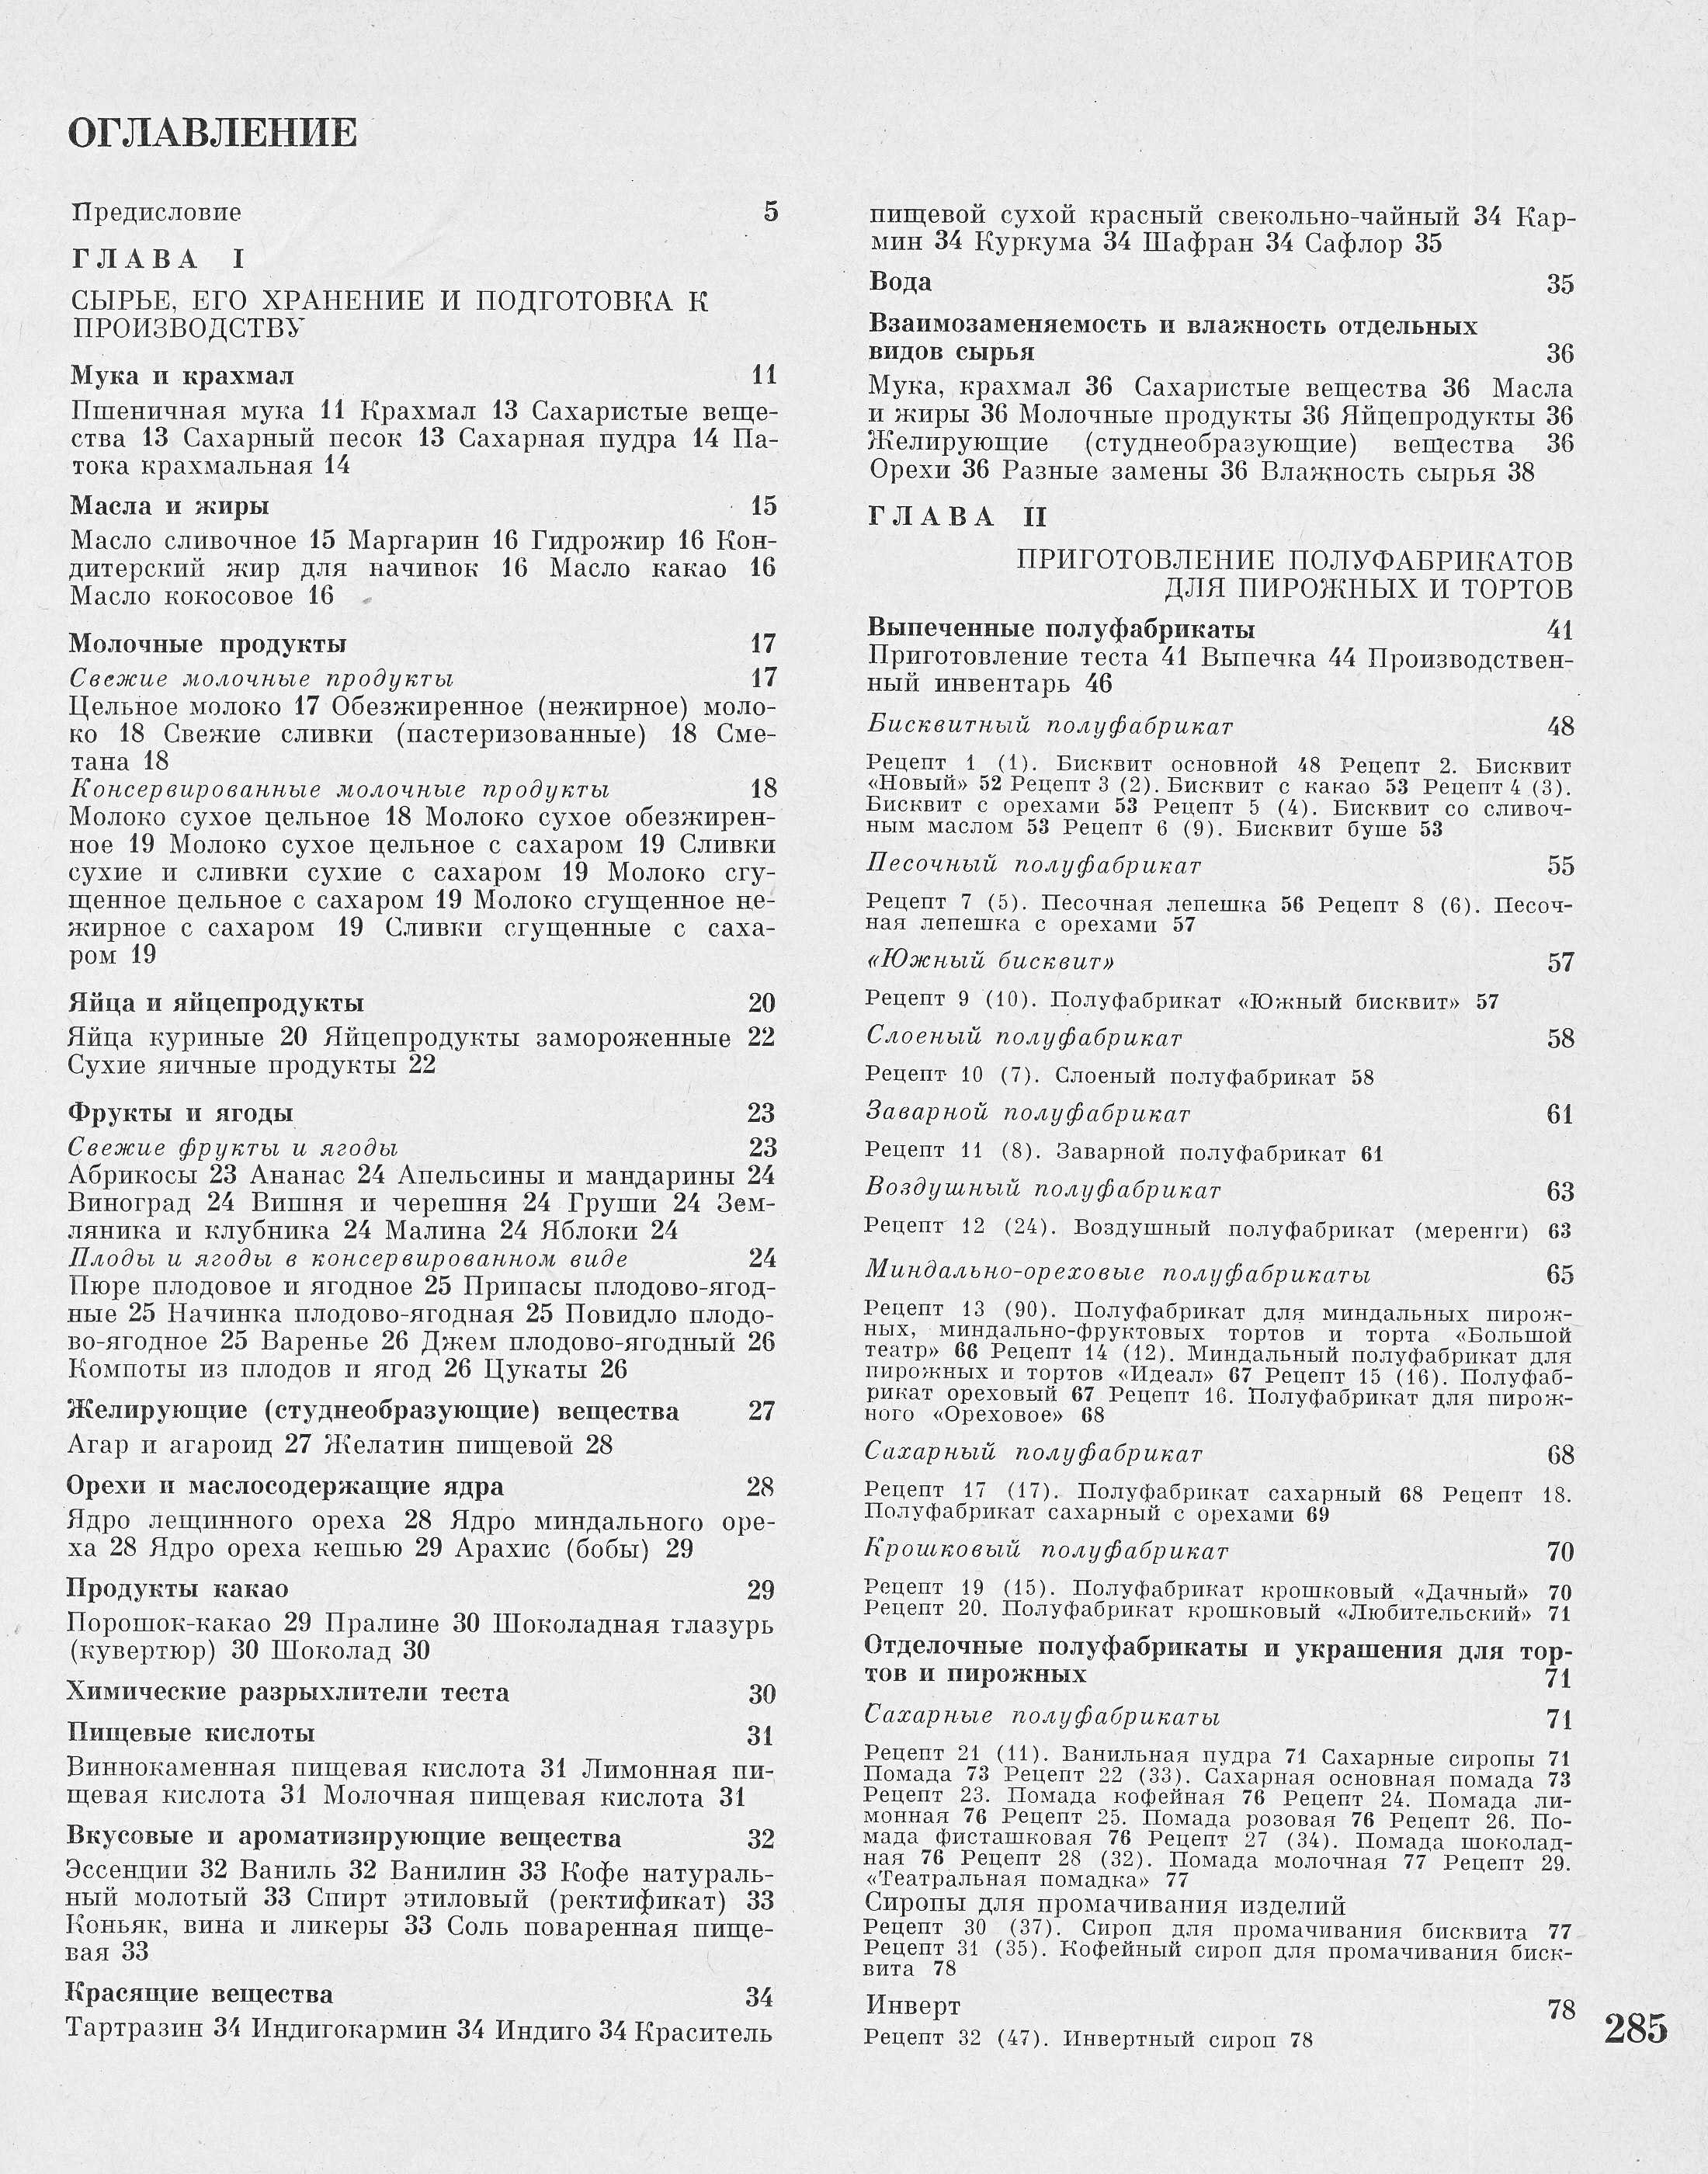 Производство пирожных и тортов П.С. Мархель, Ю.Л. Гопенштейн, С.В. Смелов 1974 г. страница 285